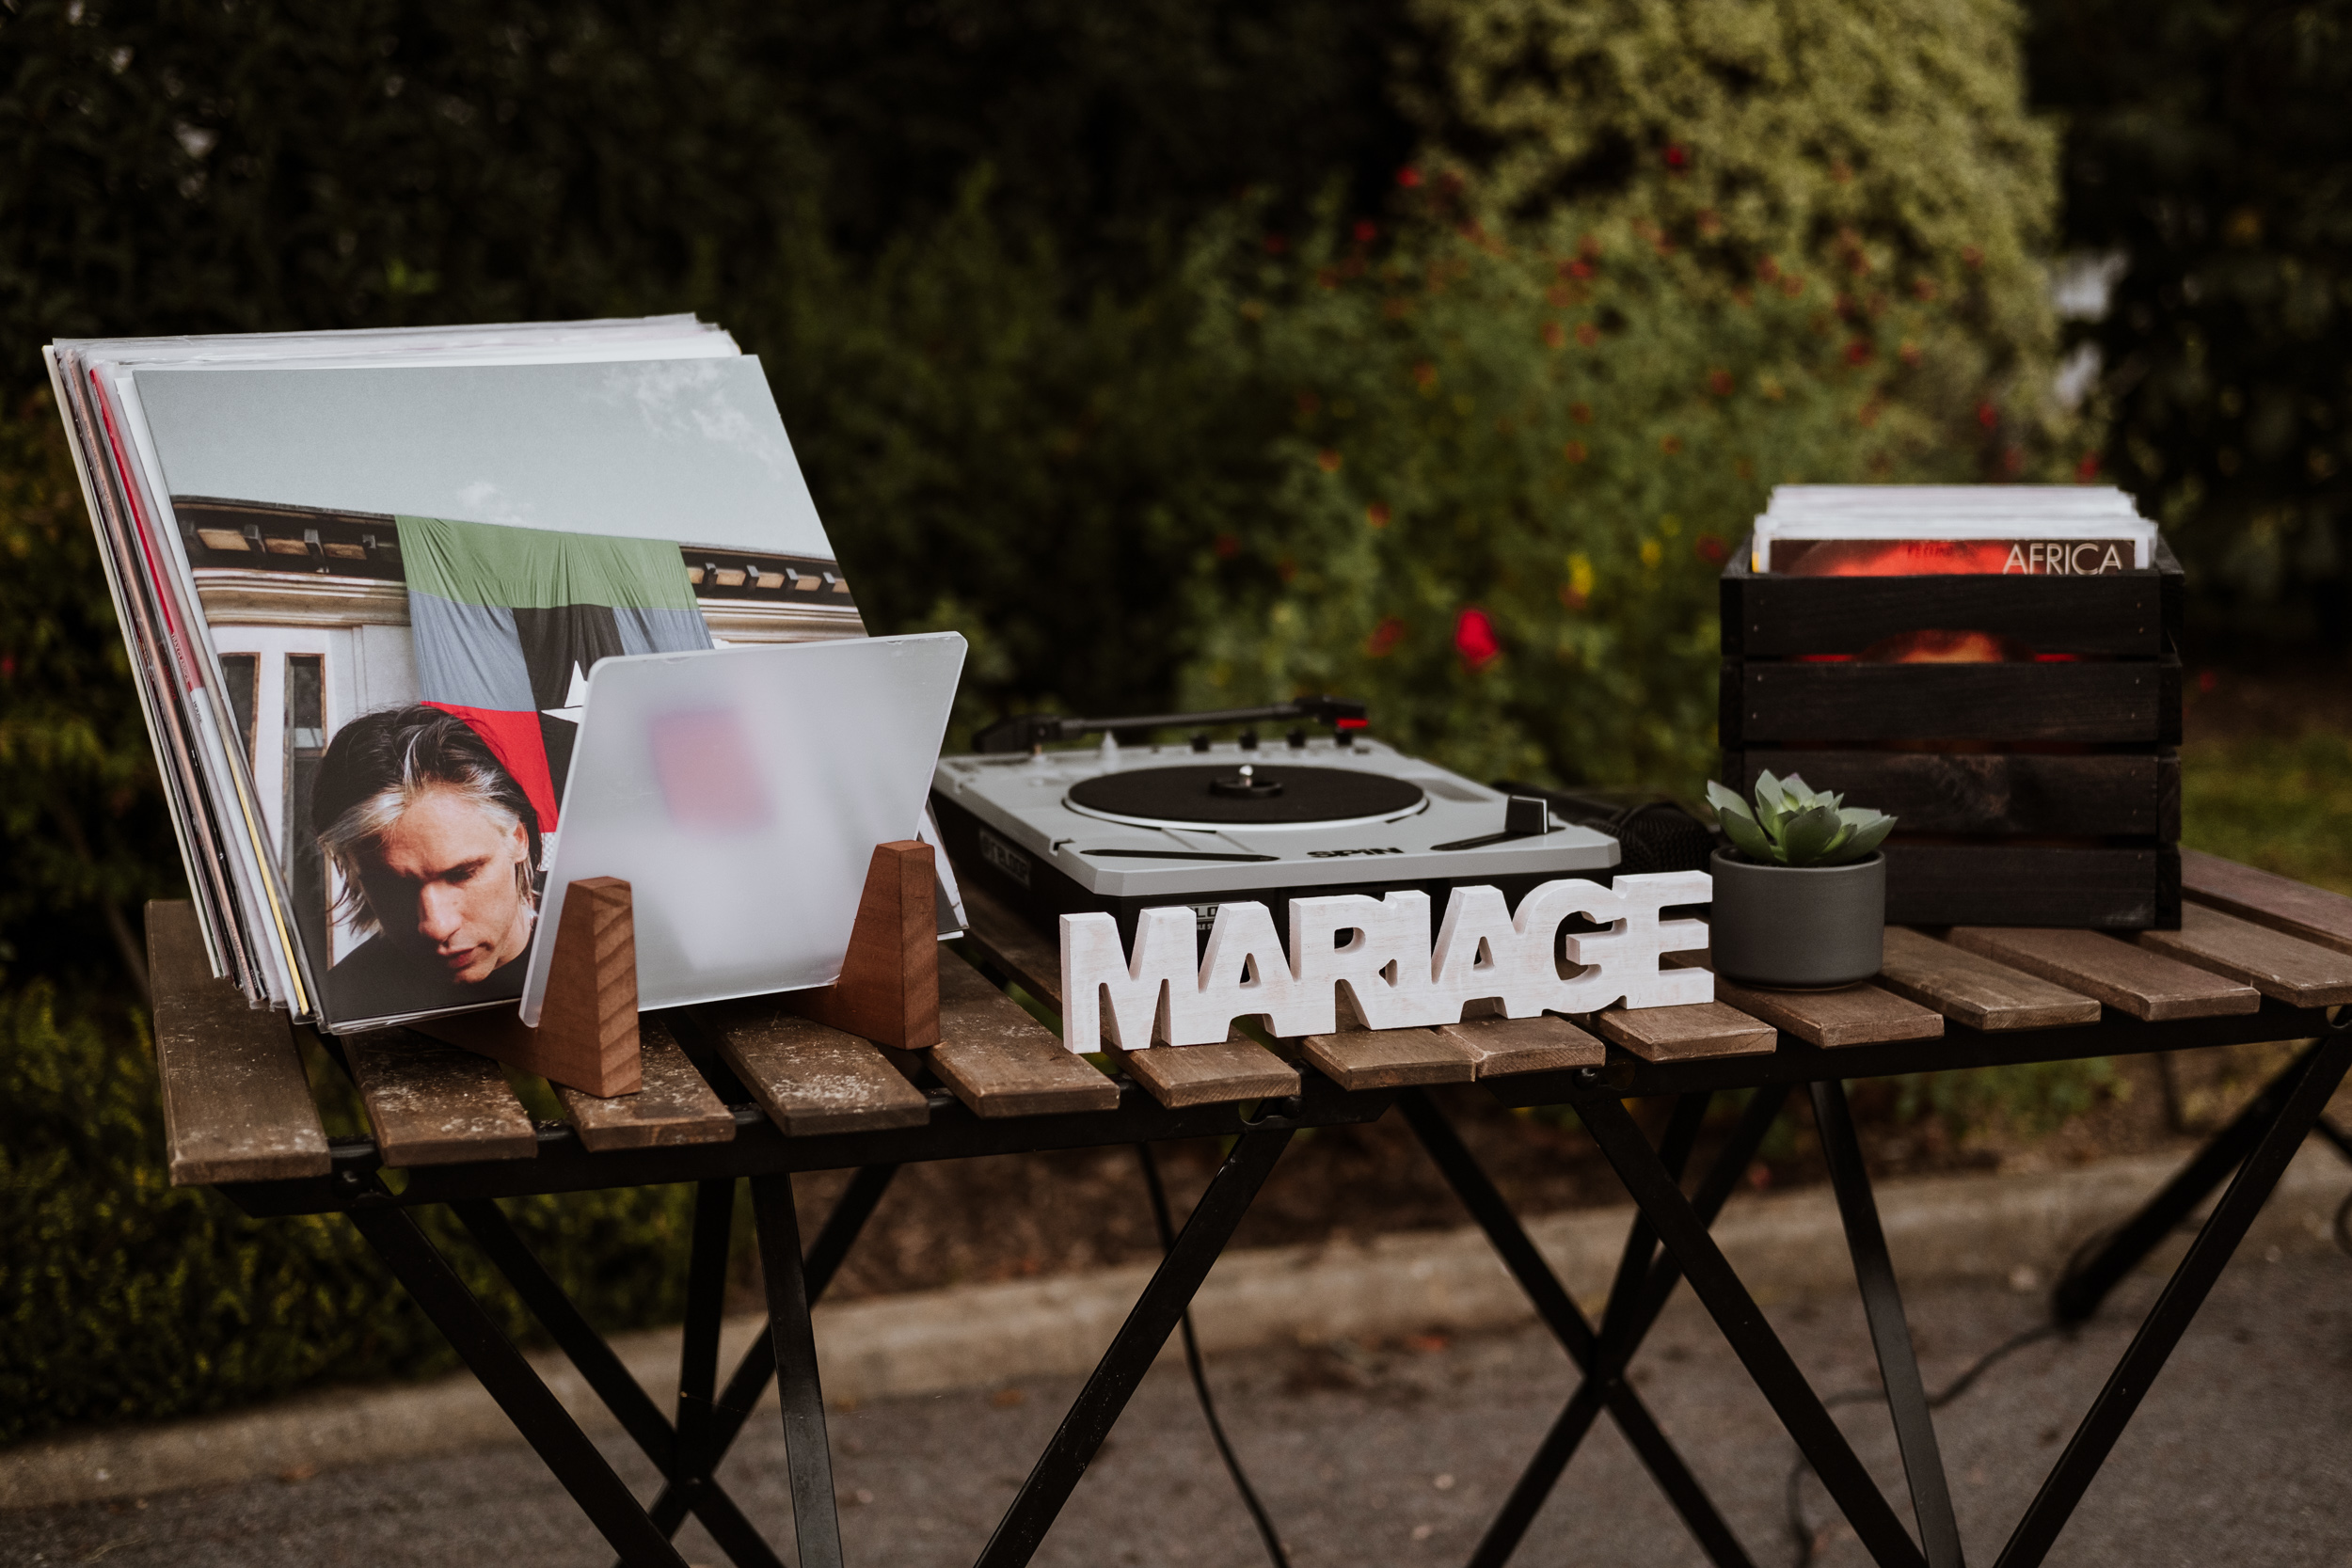 DJ mariage vinyles vin d'honneur cocktail conseil organisation